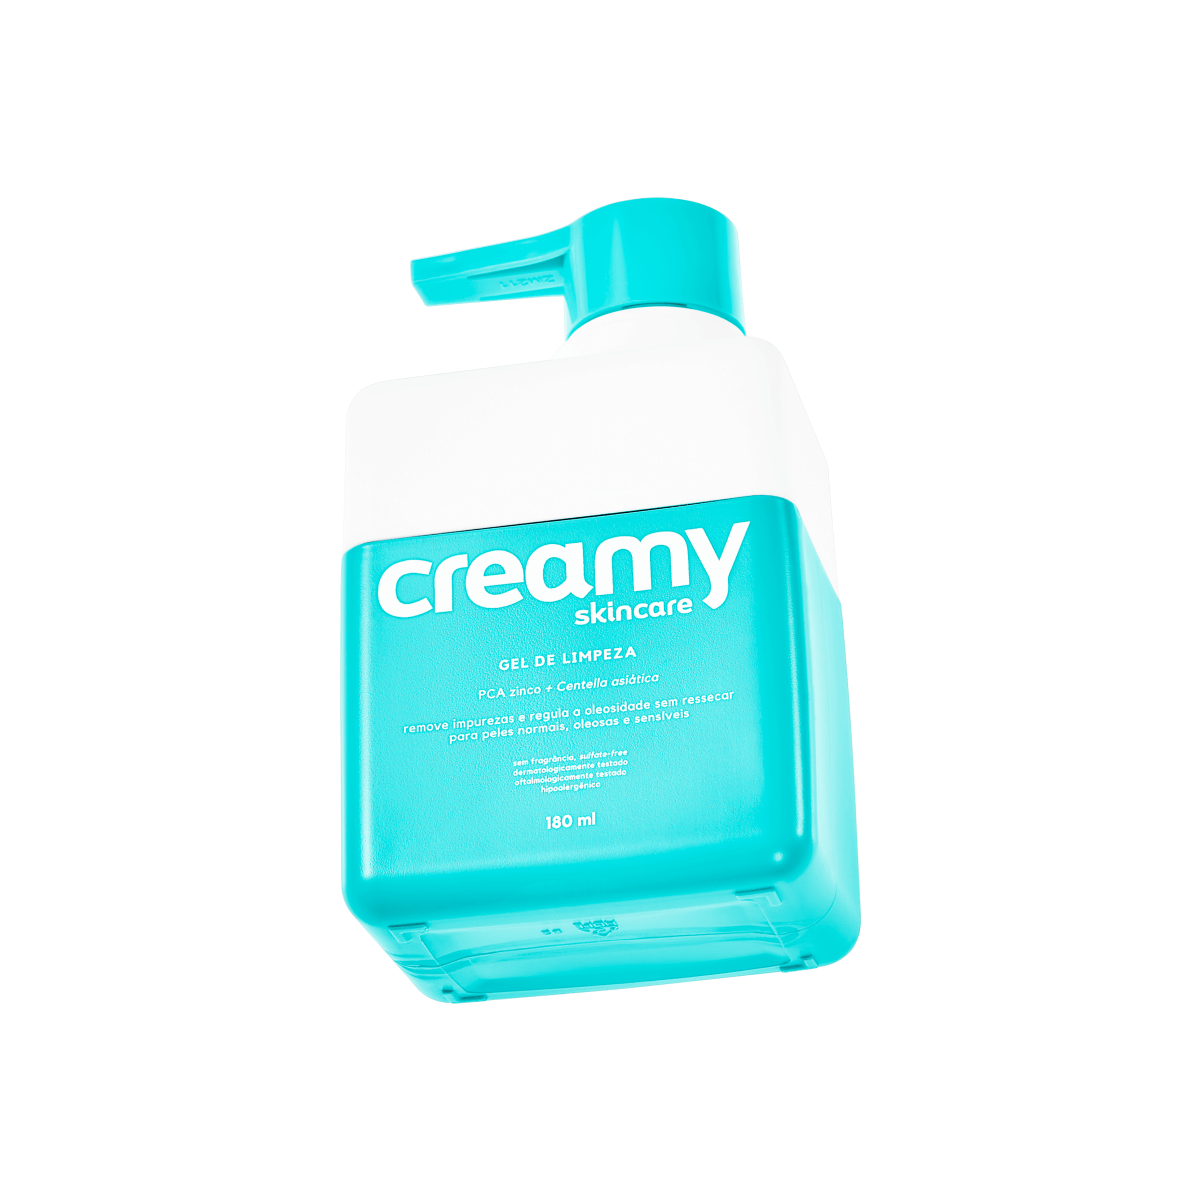 Gel de Limpeza Creamy Skincare com 180ml